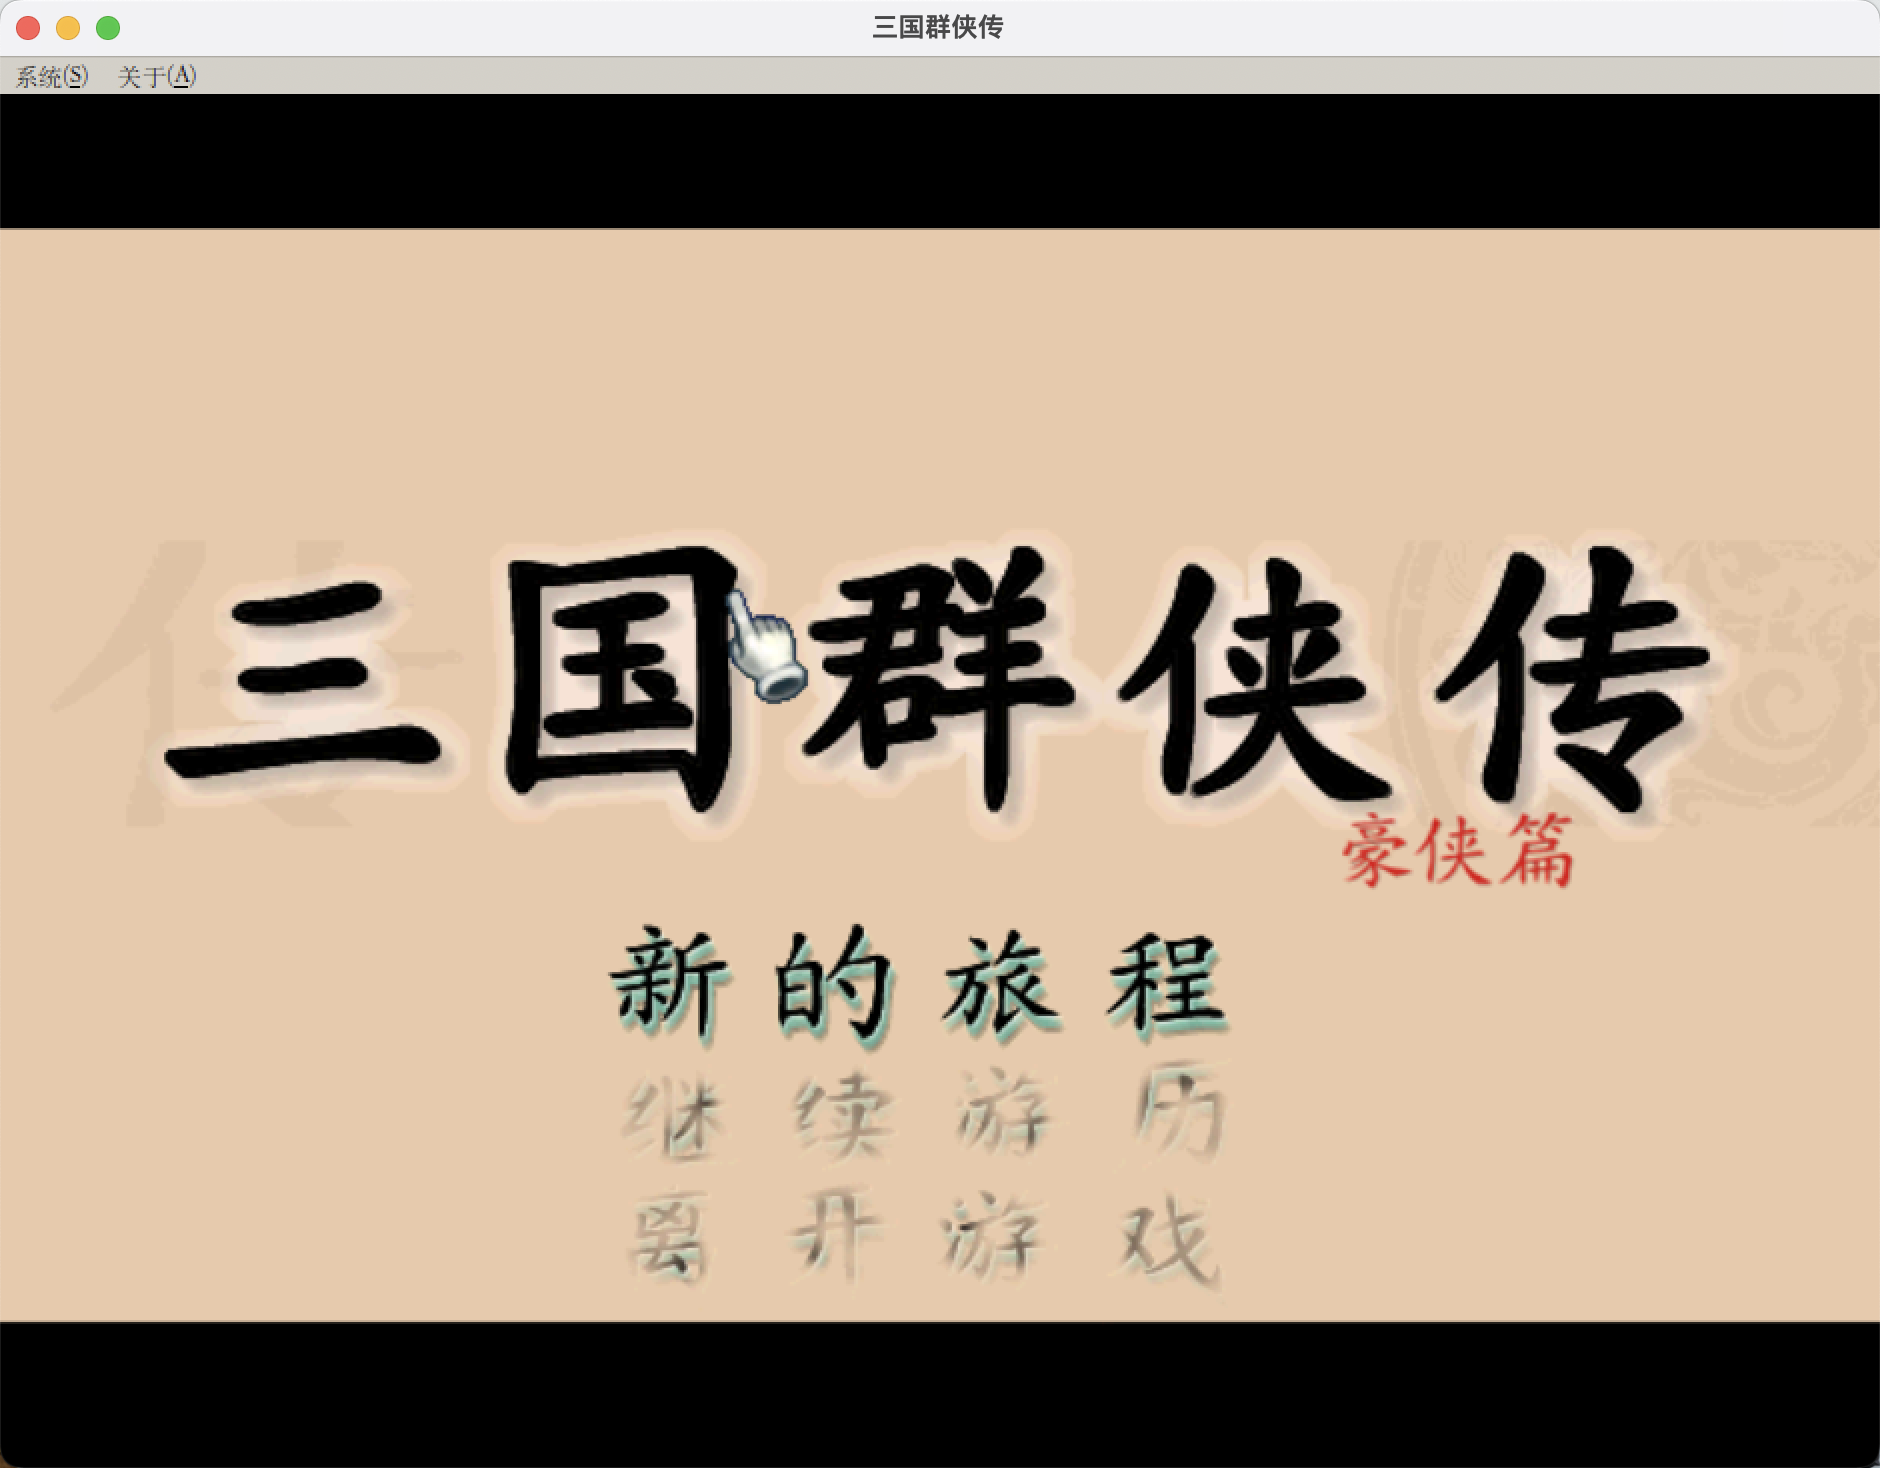 三国群侠传 for Mac v1.0 中文移植版 苹果电脑